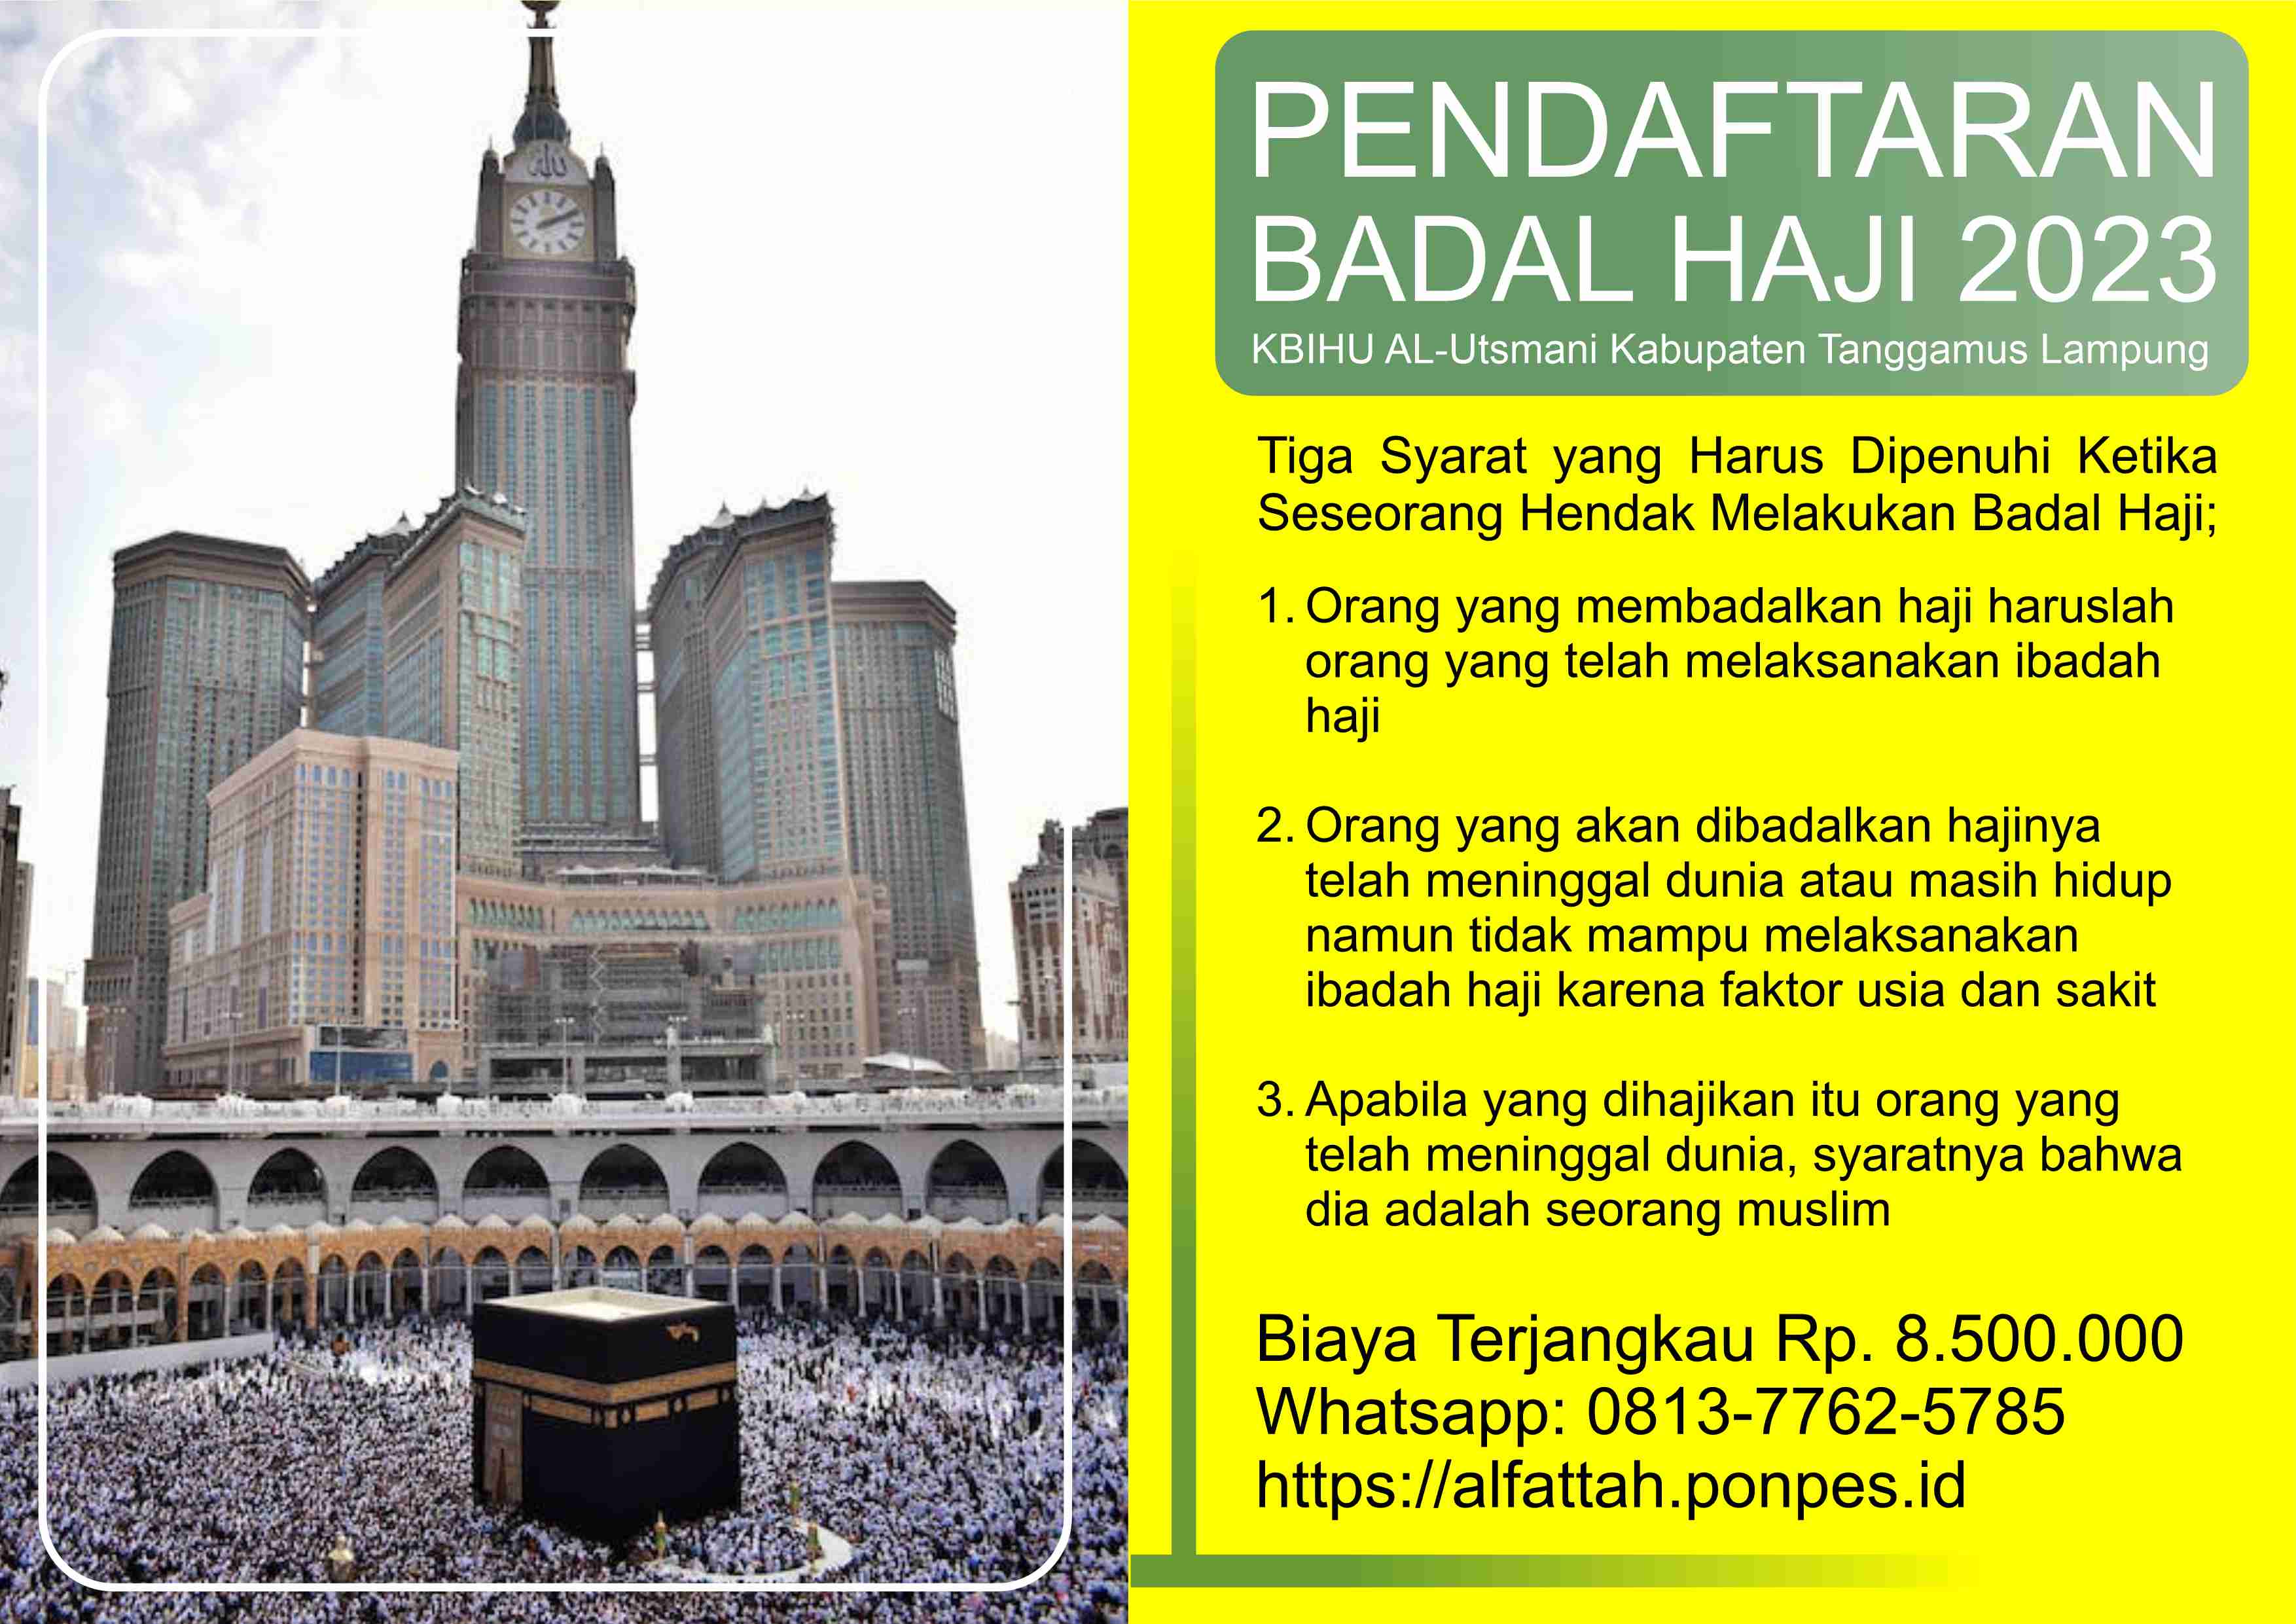 Membuka Pendaftaran Badal Haji 2023 – Persyaratan dan Kontak KBIHU Al-Ustmani